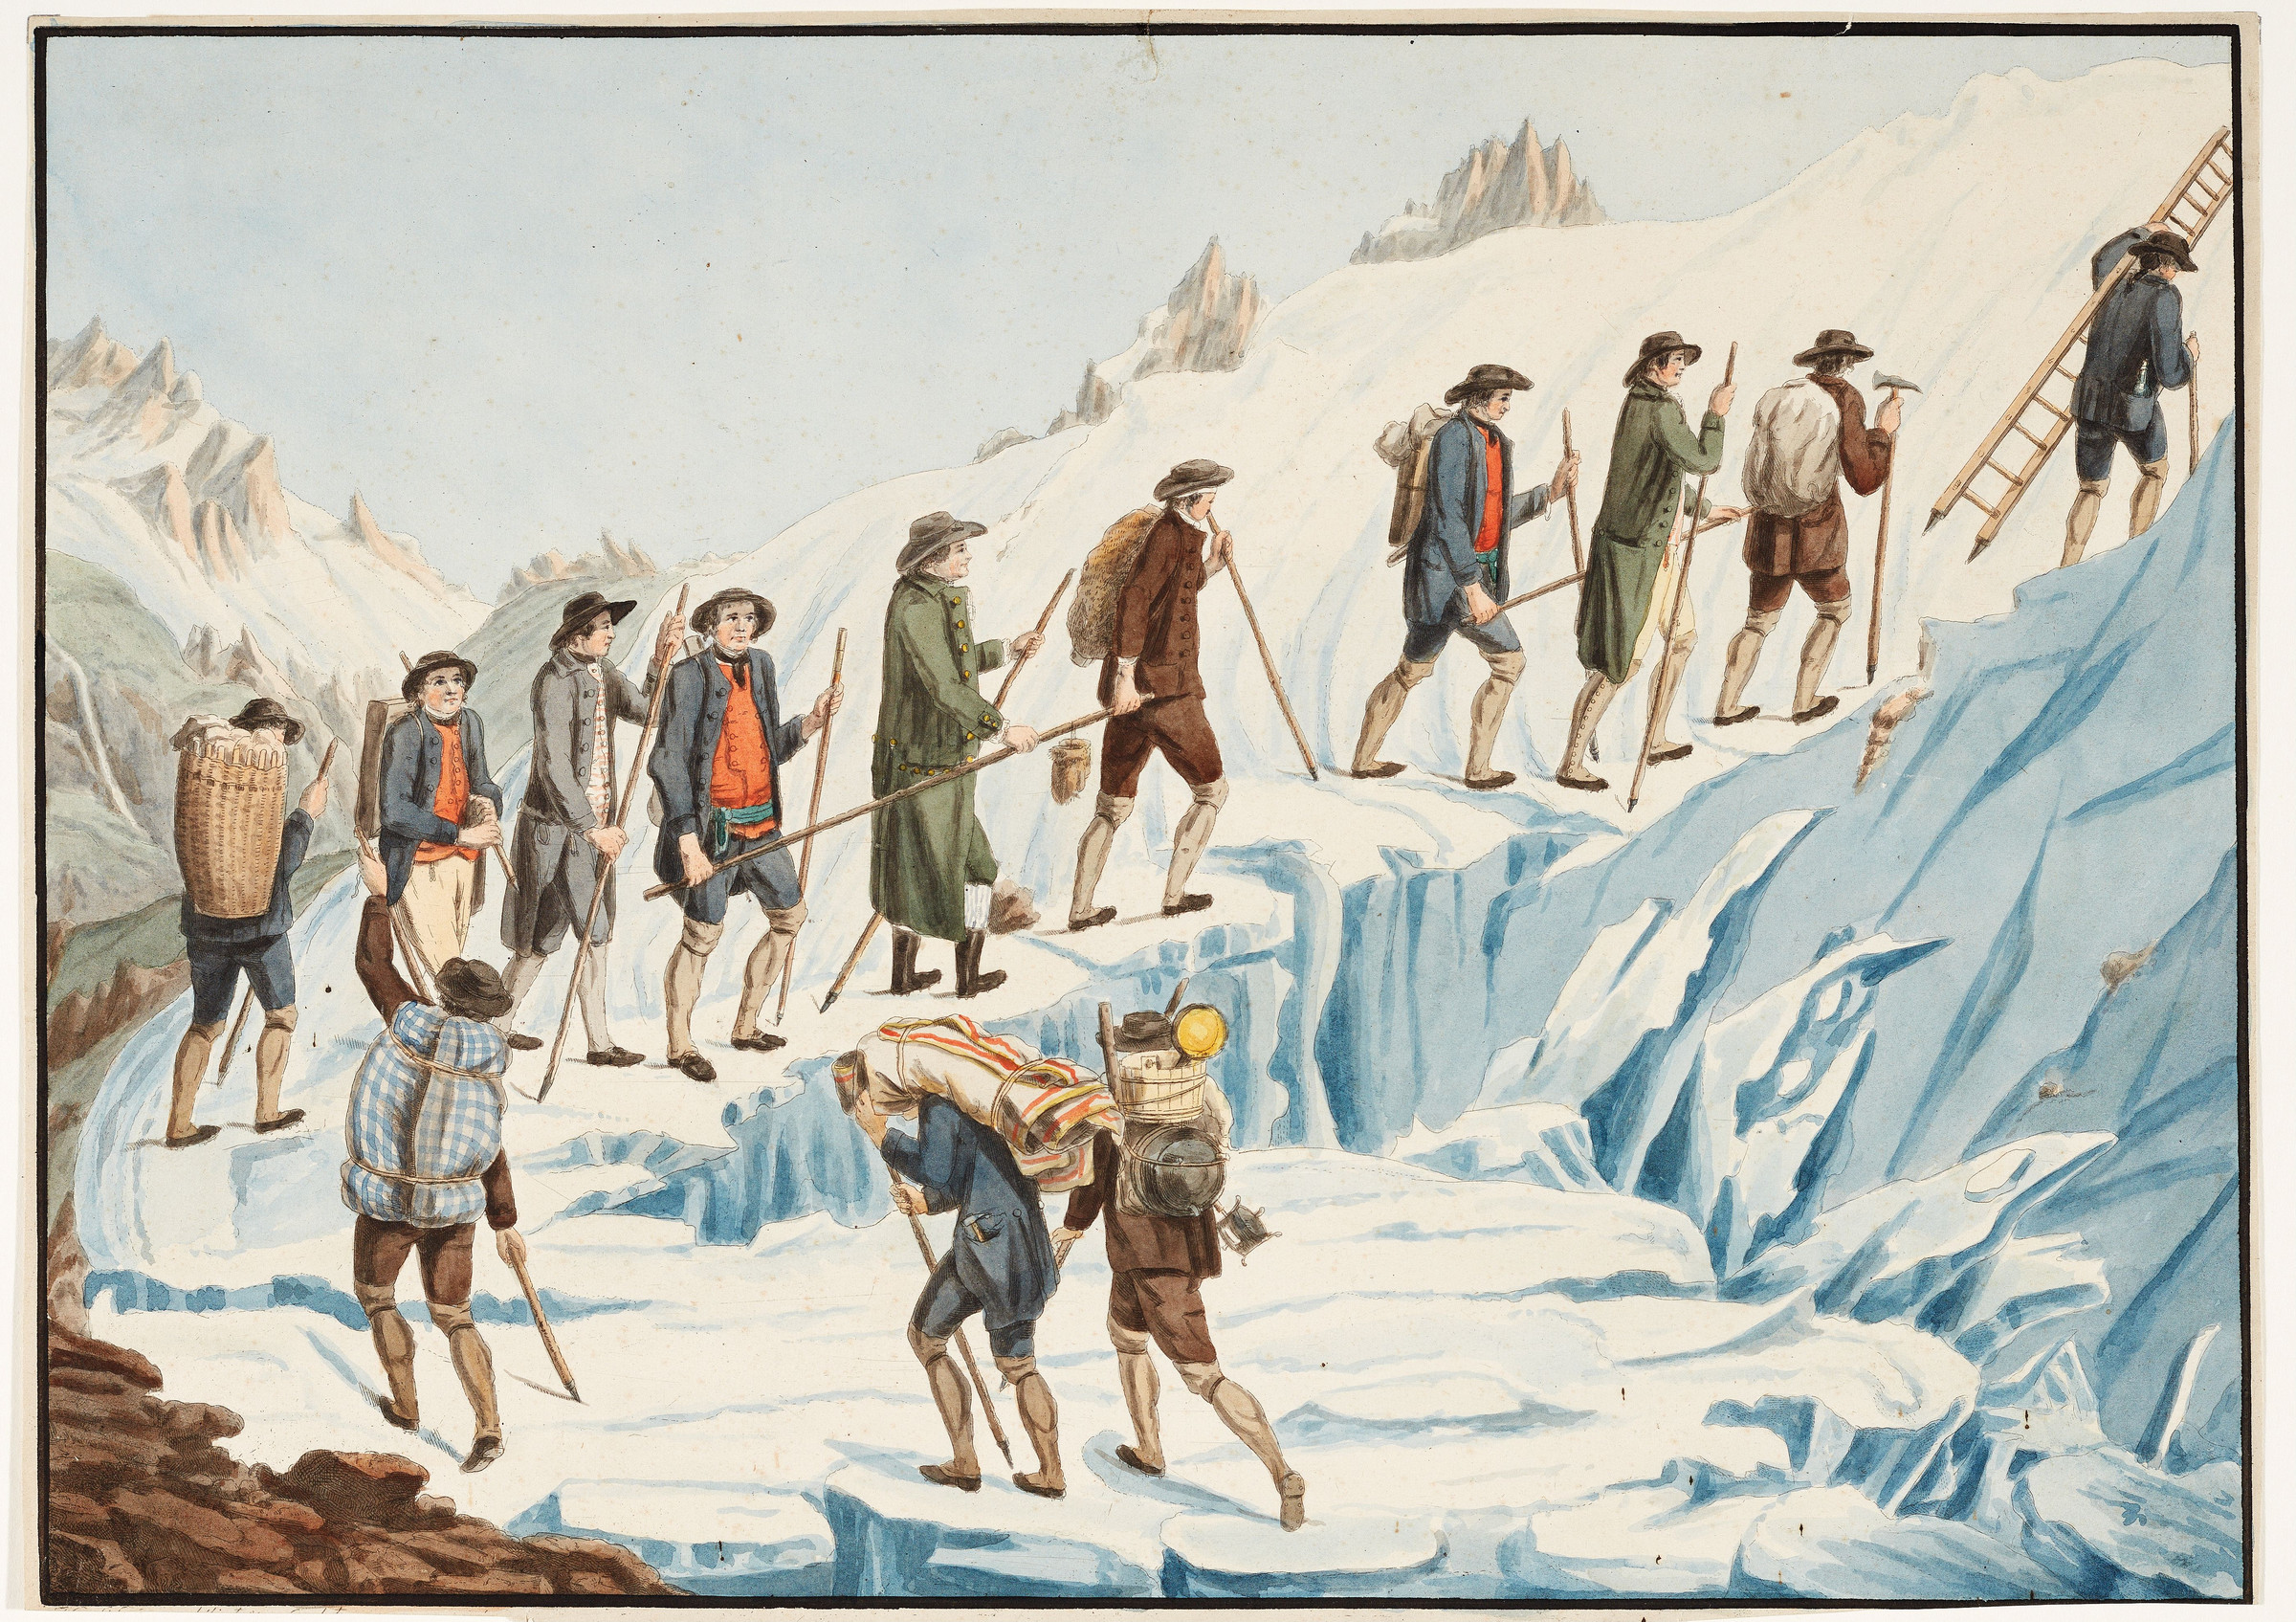 Ascension du Mont Blanc par le savant genevois Horace-Bénédict de Saussure 